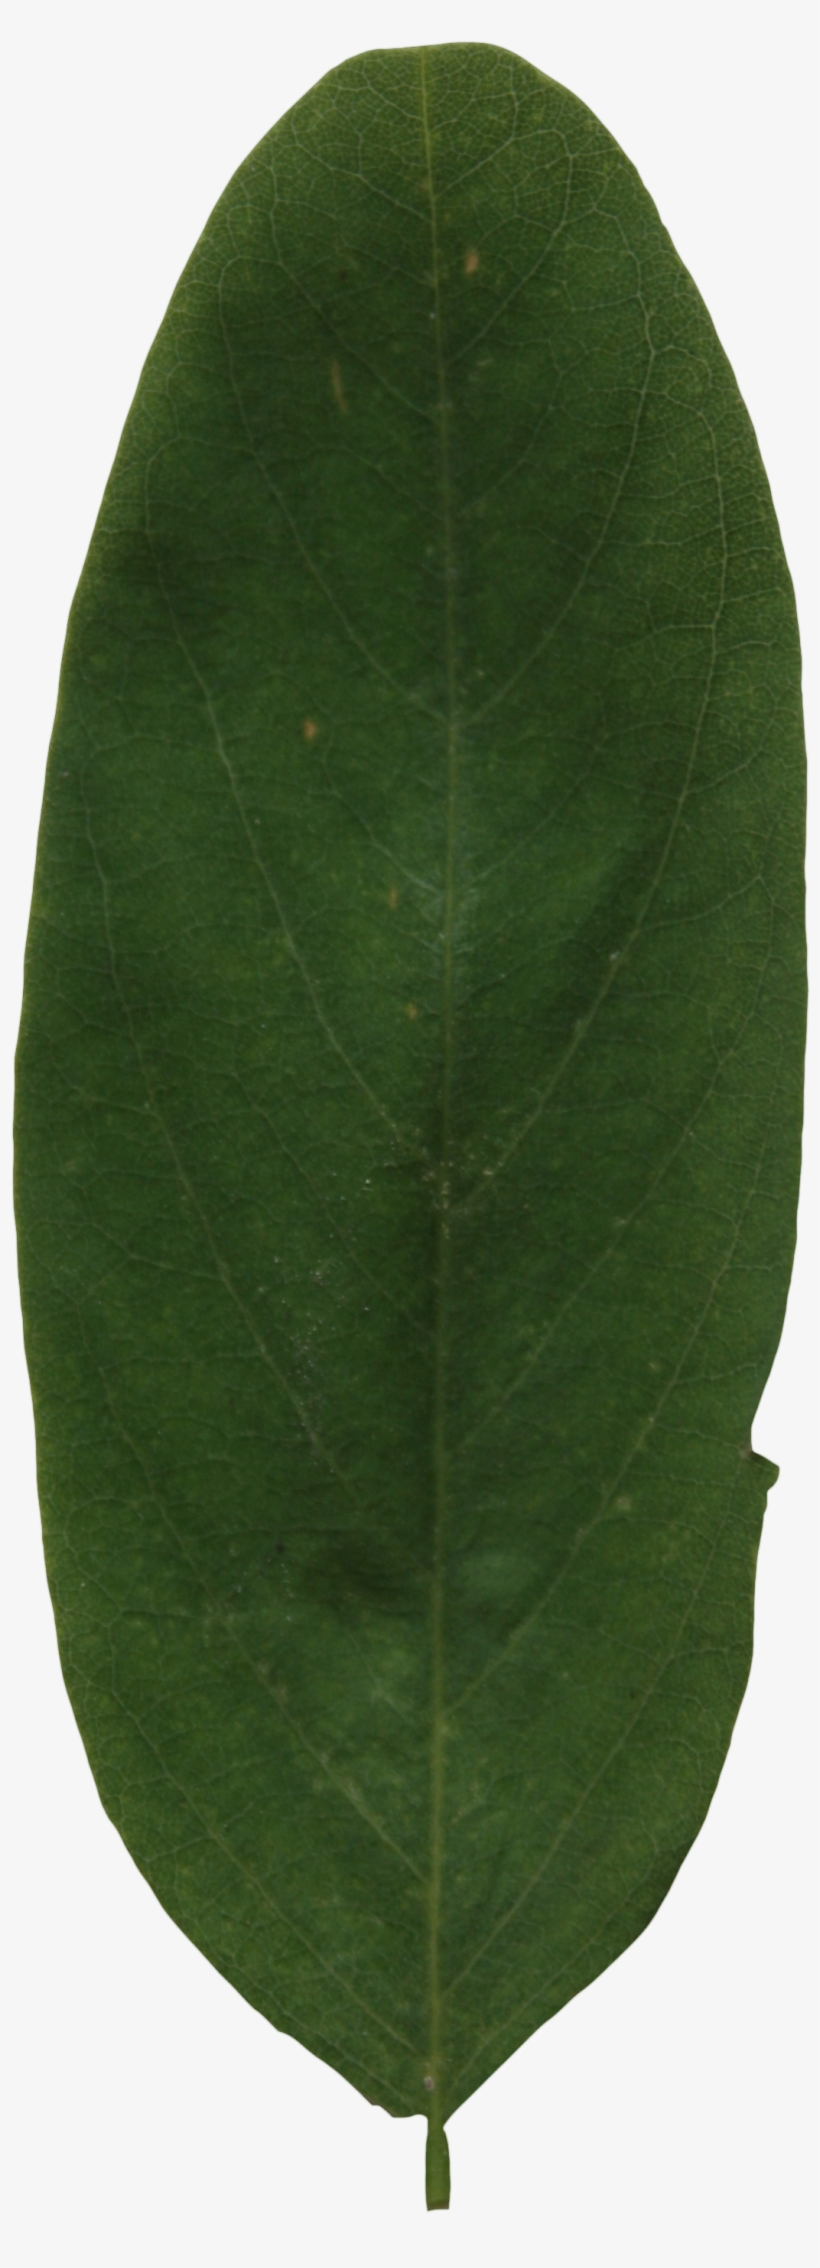 2d Leaves - Bay Laurel, transparent png #3164848